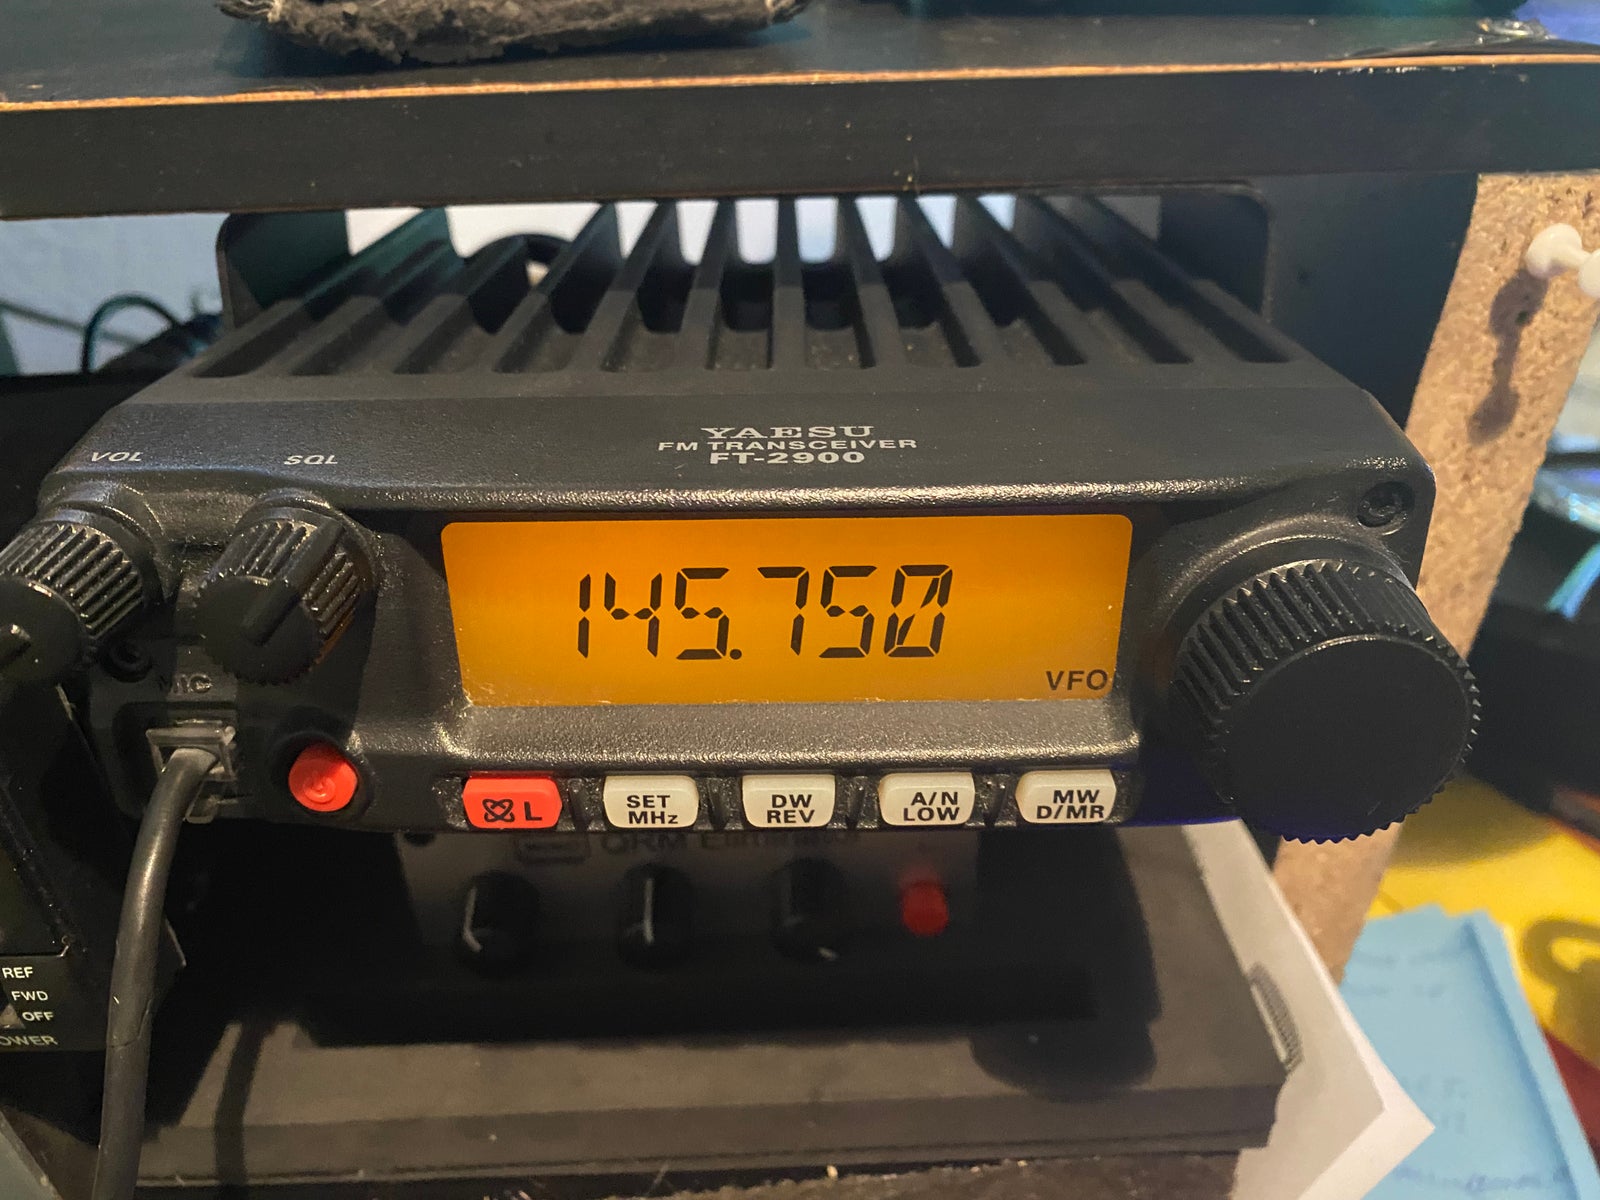 VHF FM, yaesu, 2900r